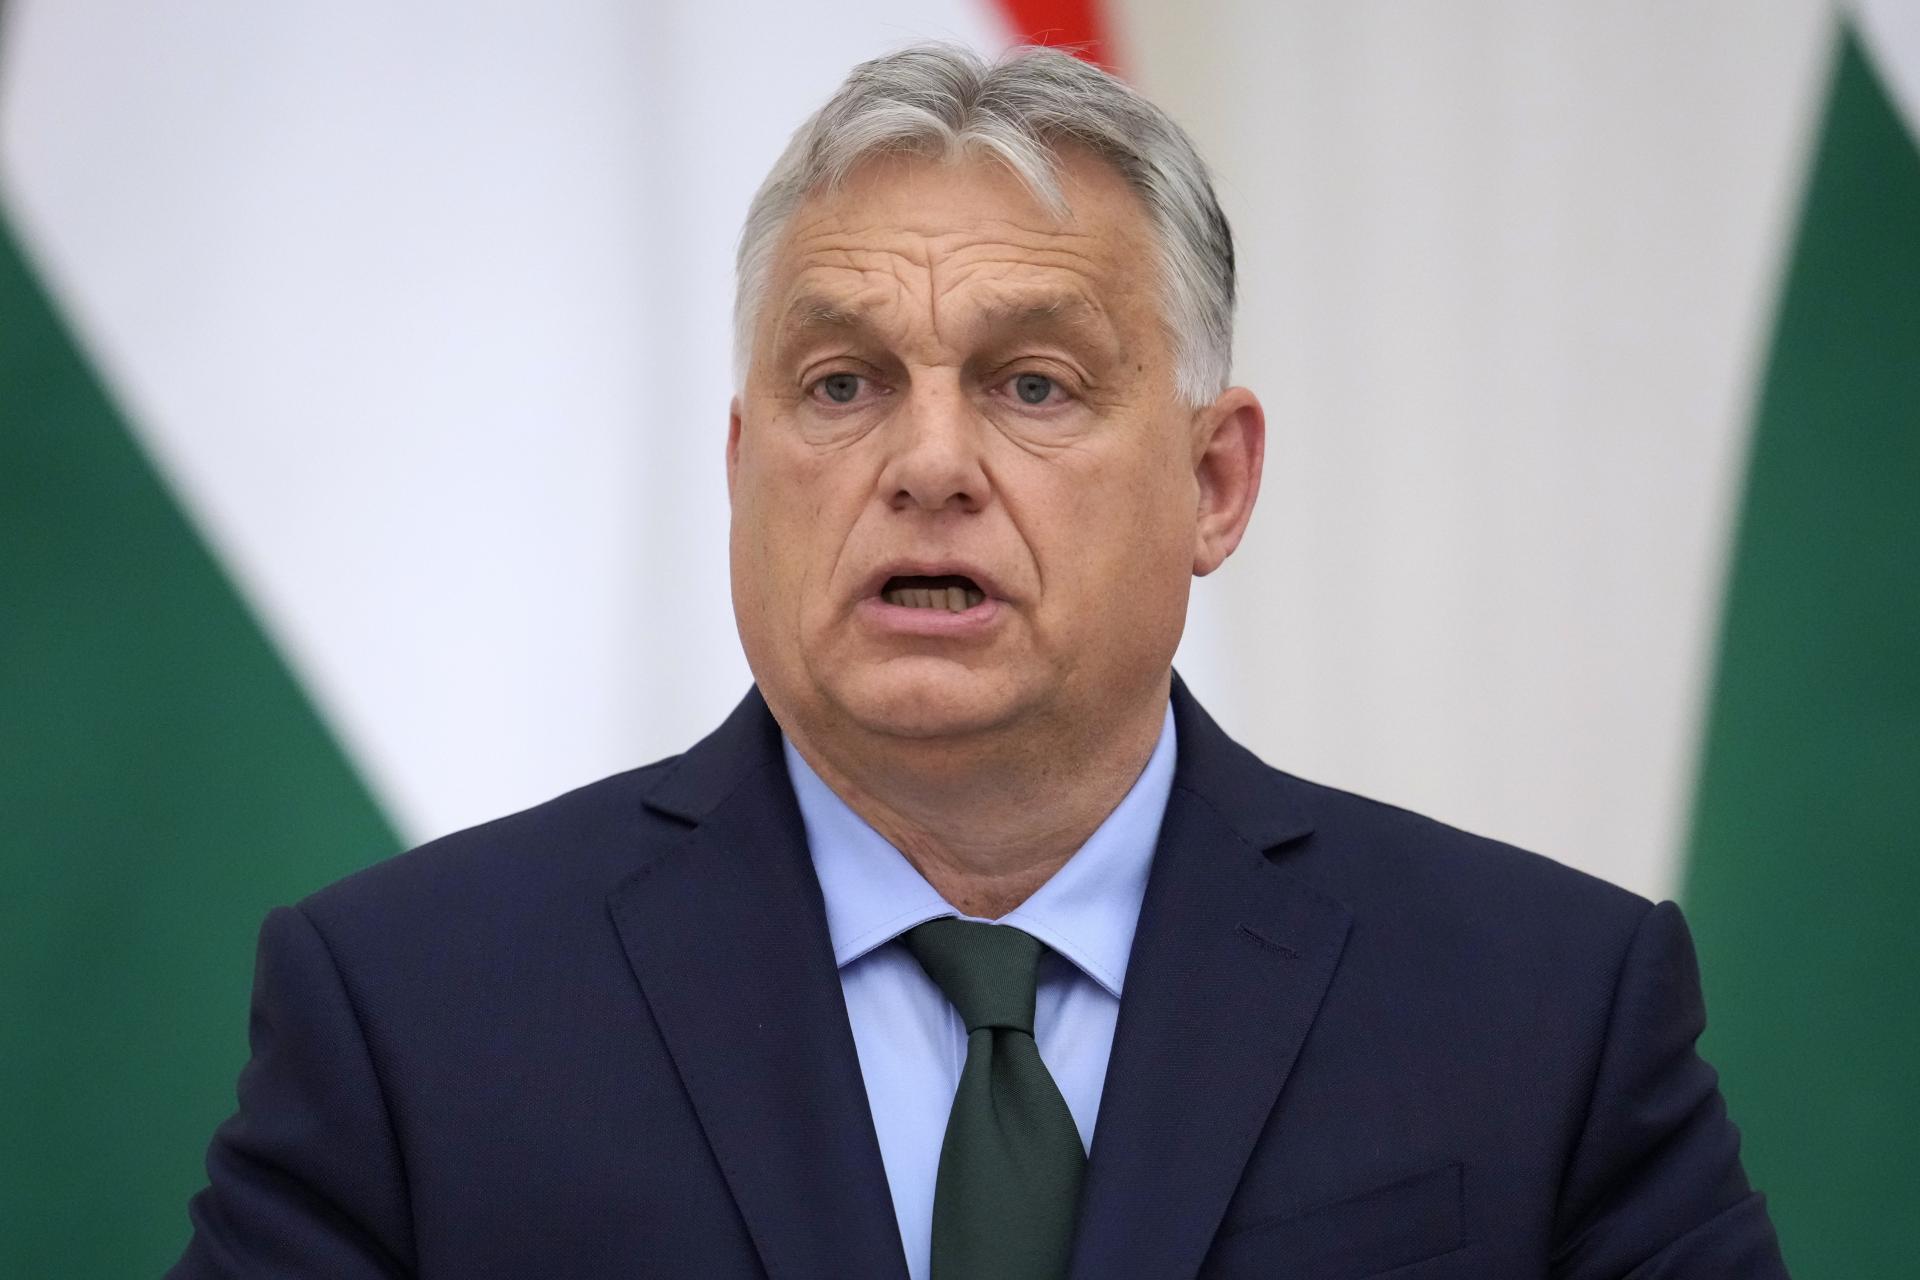 Putin nenapadne členskú krajinu NATO, tvrdí Orbán. Trumpa označil za muža mieru